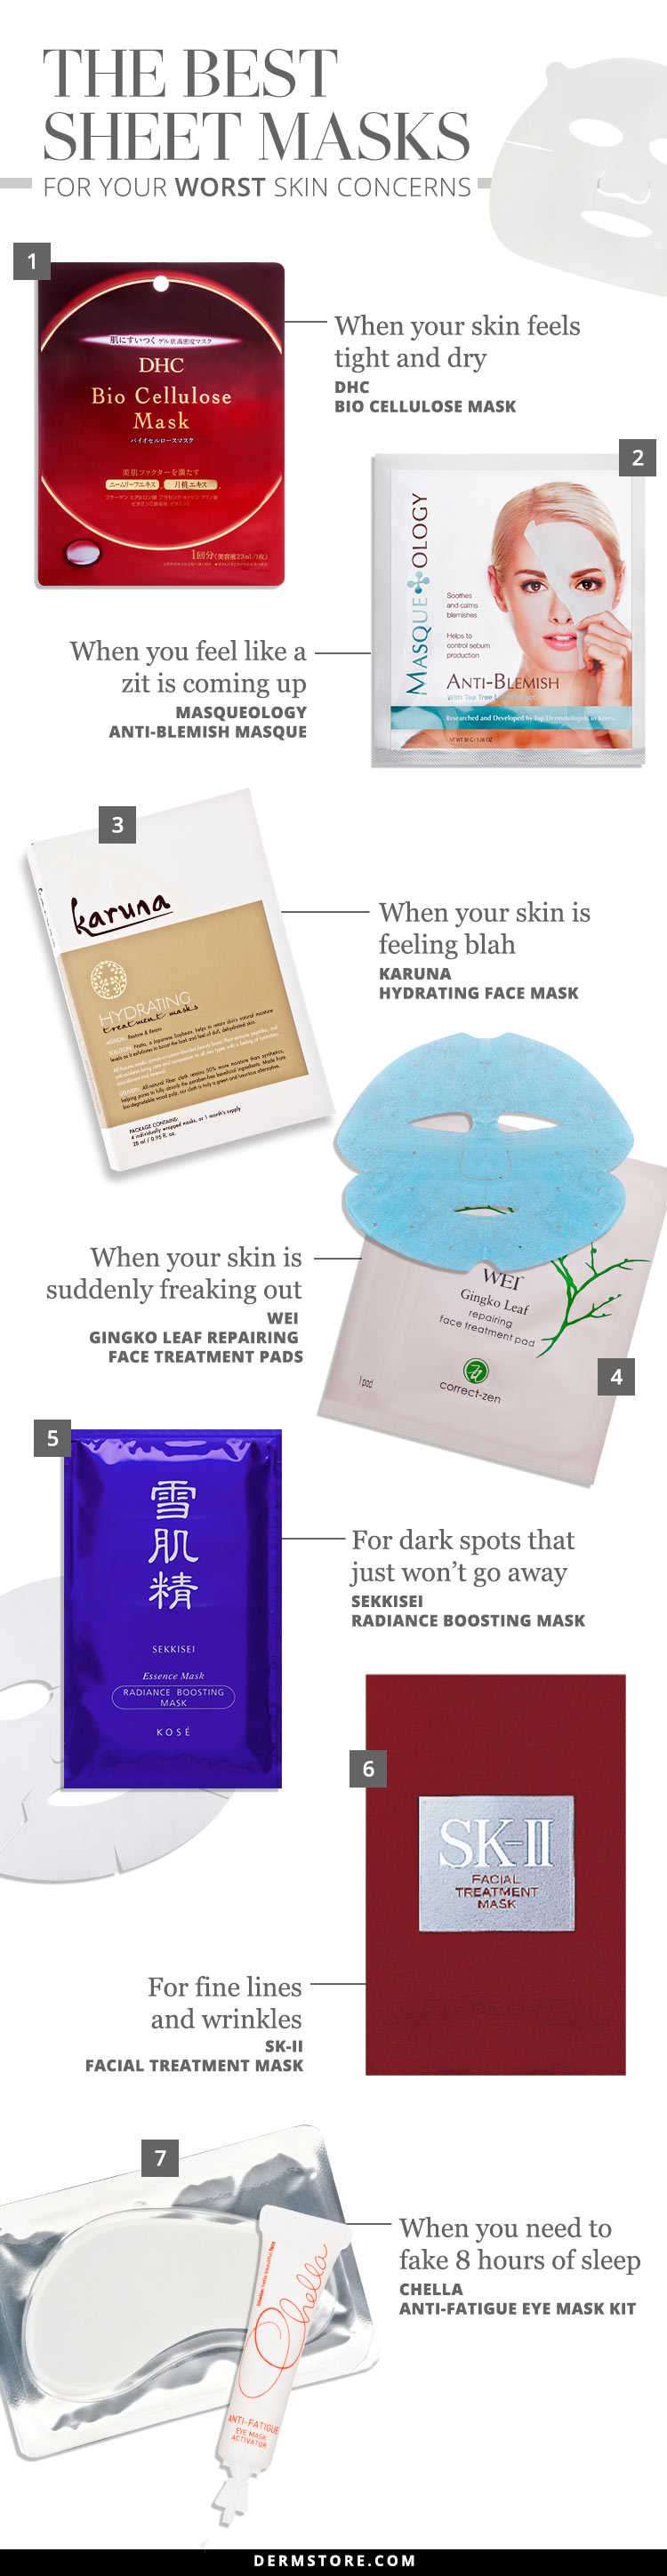 The Best Sheet Masks for Your Worst Skin Concerns